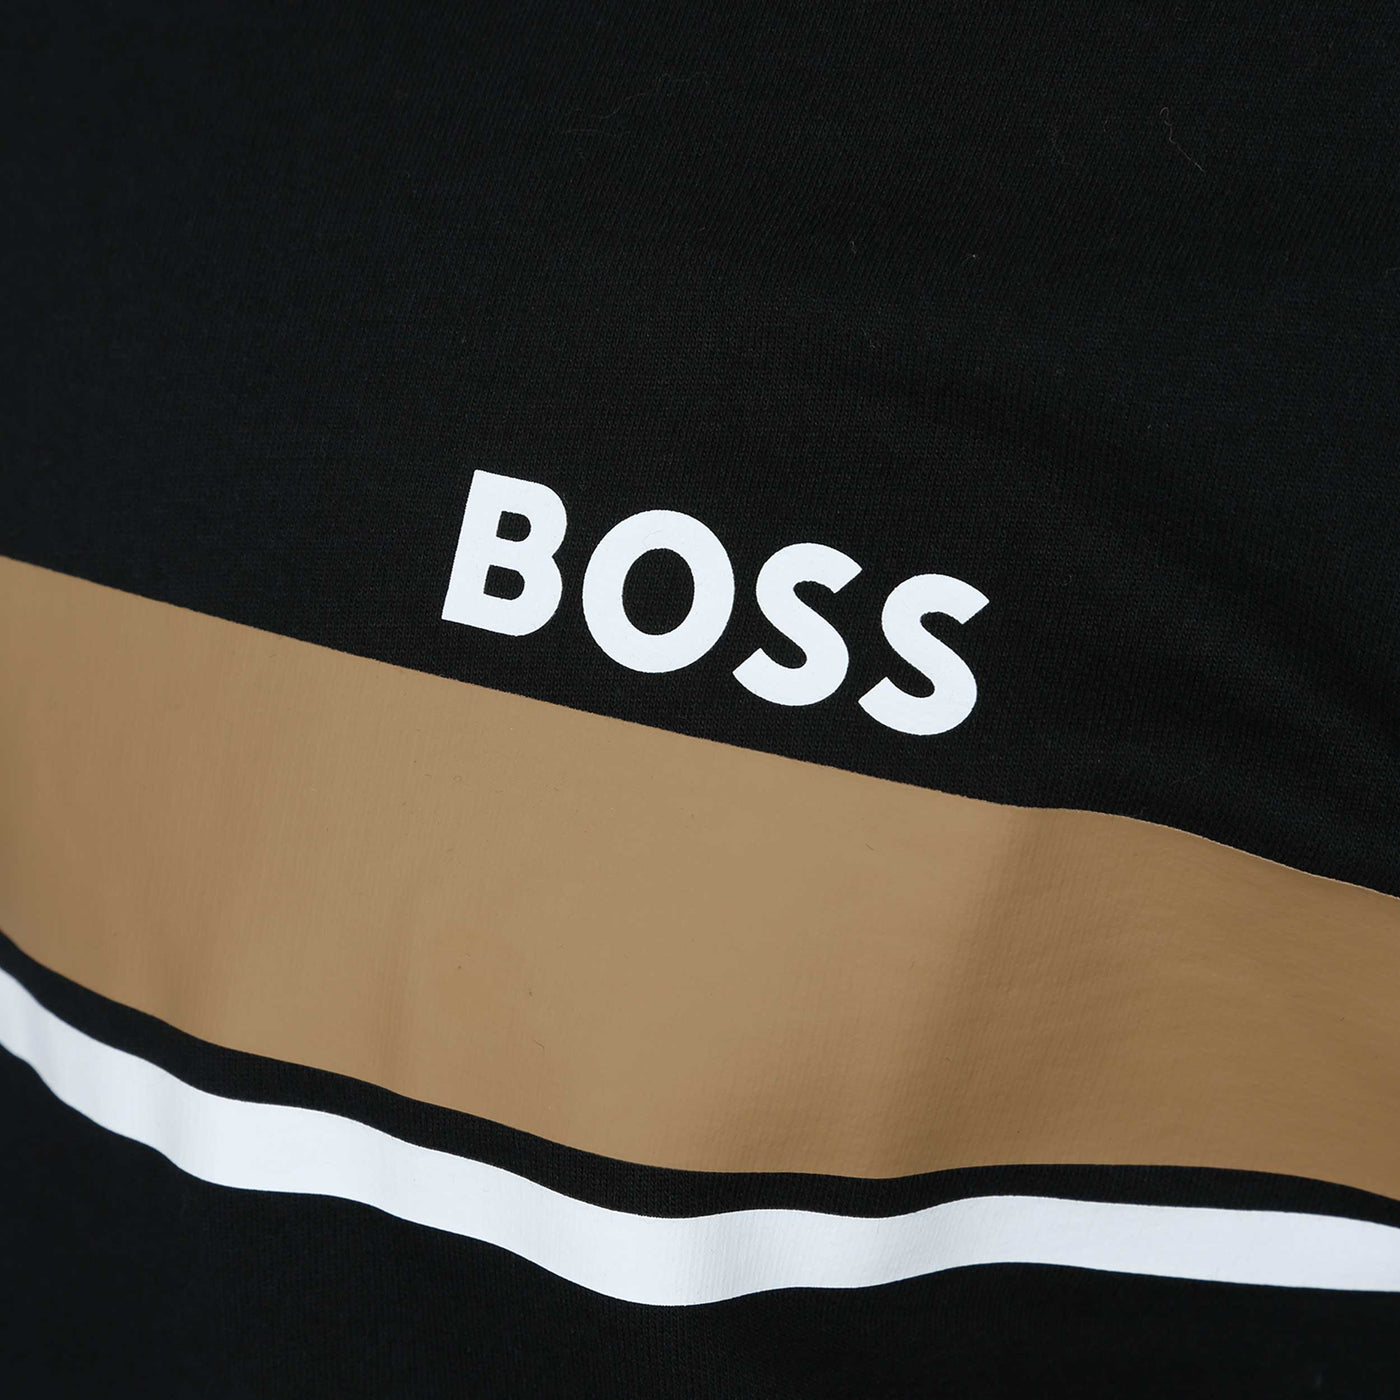 BOSS Authentic Sweatshirt Sweat Top in Black